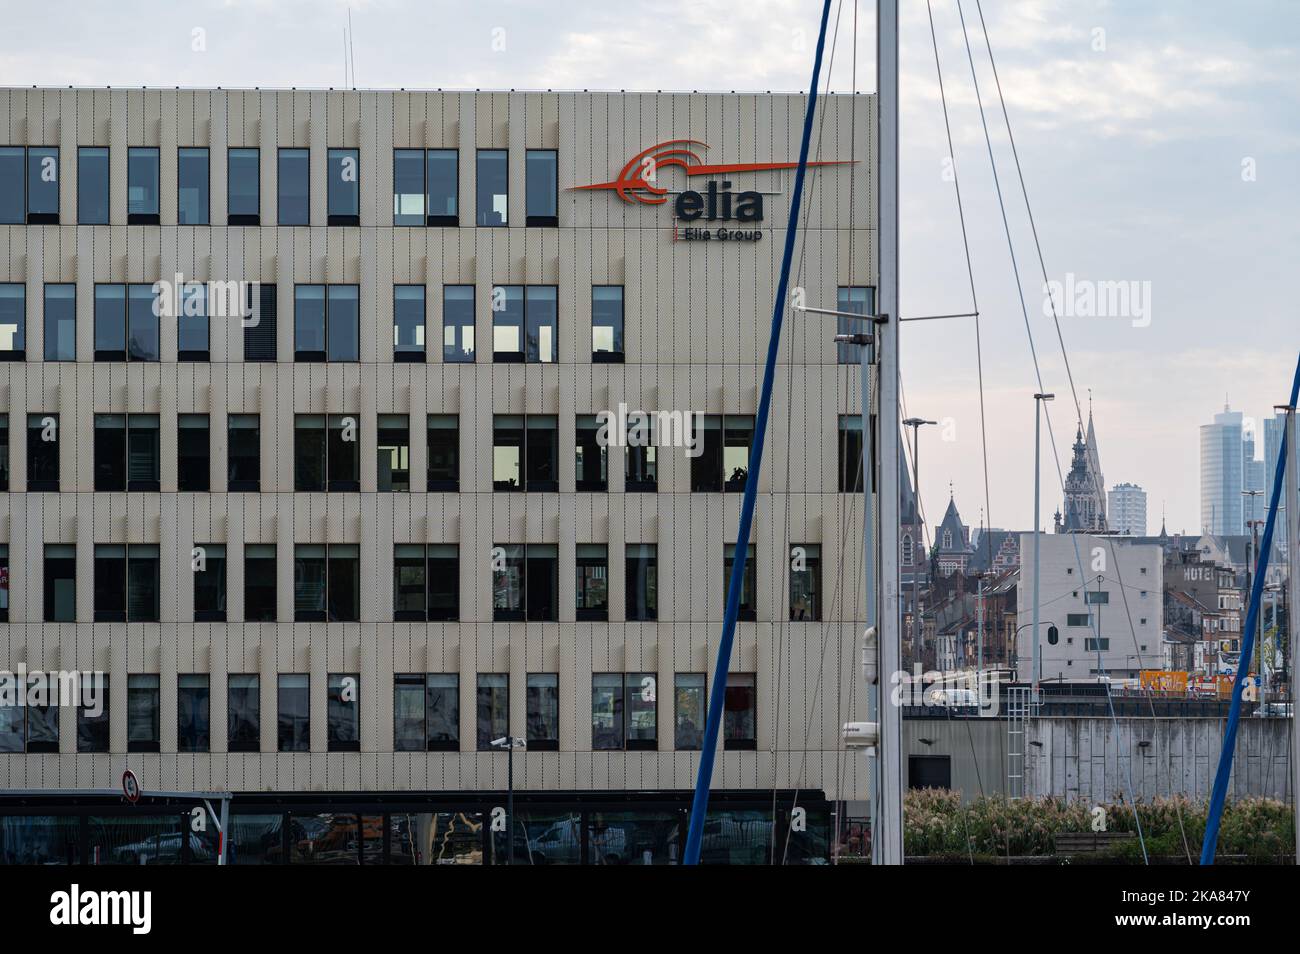 Neder-over-Heembeek, Bruxelles, Belgique, 10 30 2022 - Port et façade du groupe Elia, société d'ingénierie et d'électricité Banque D'Images